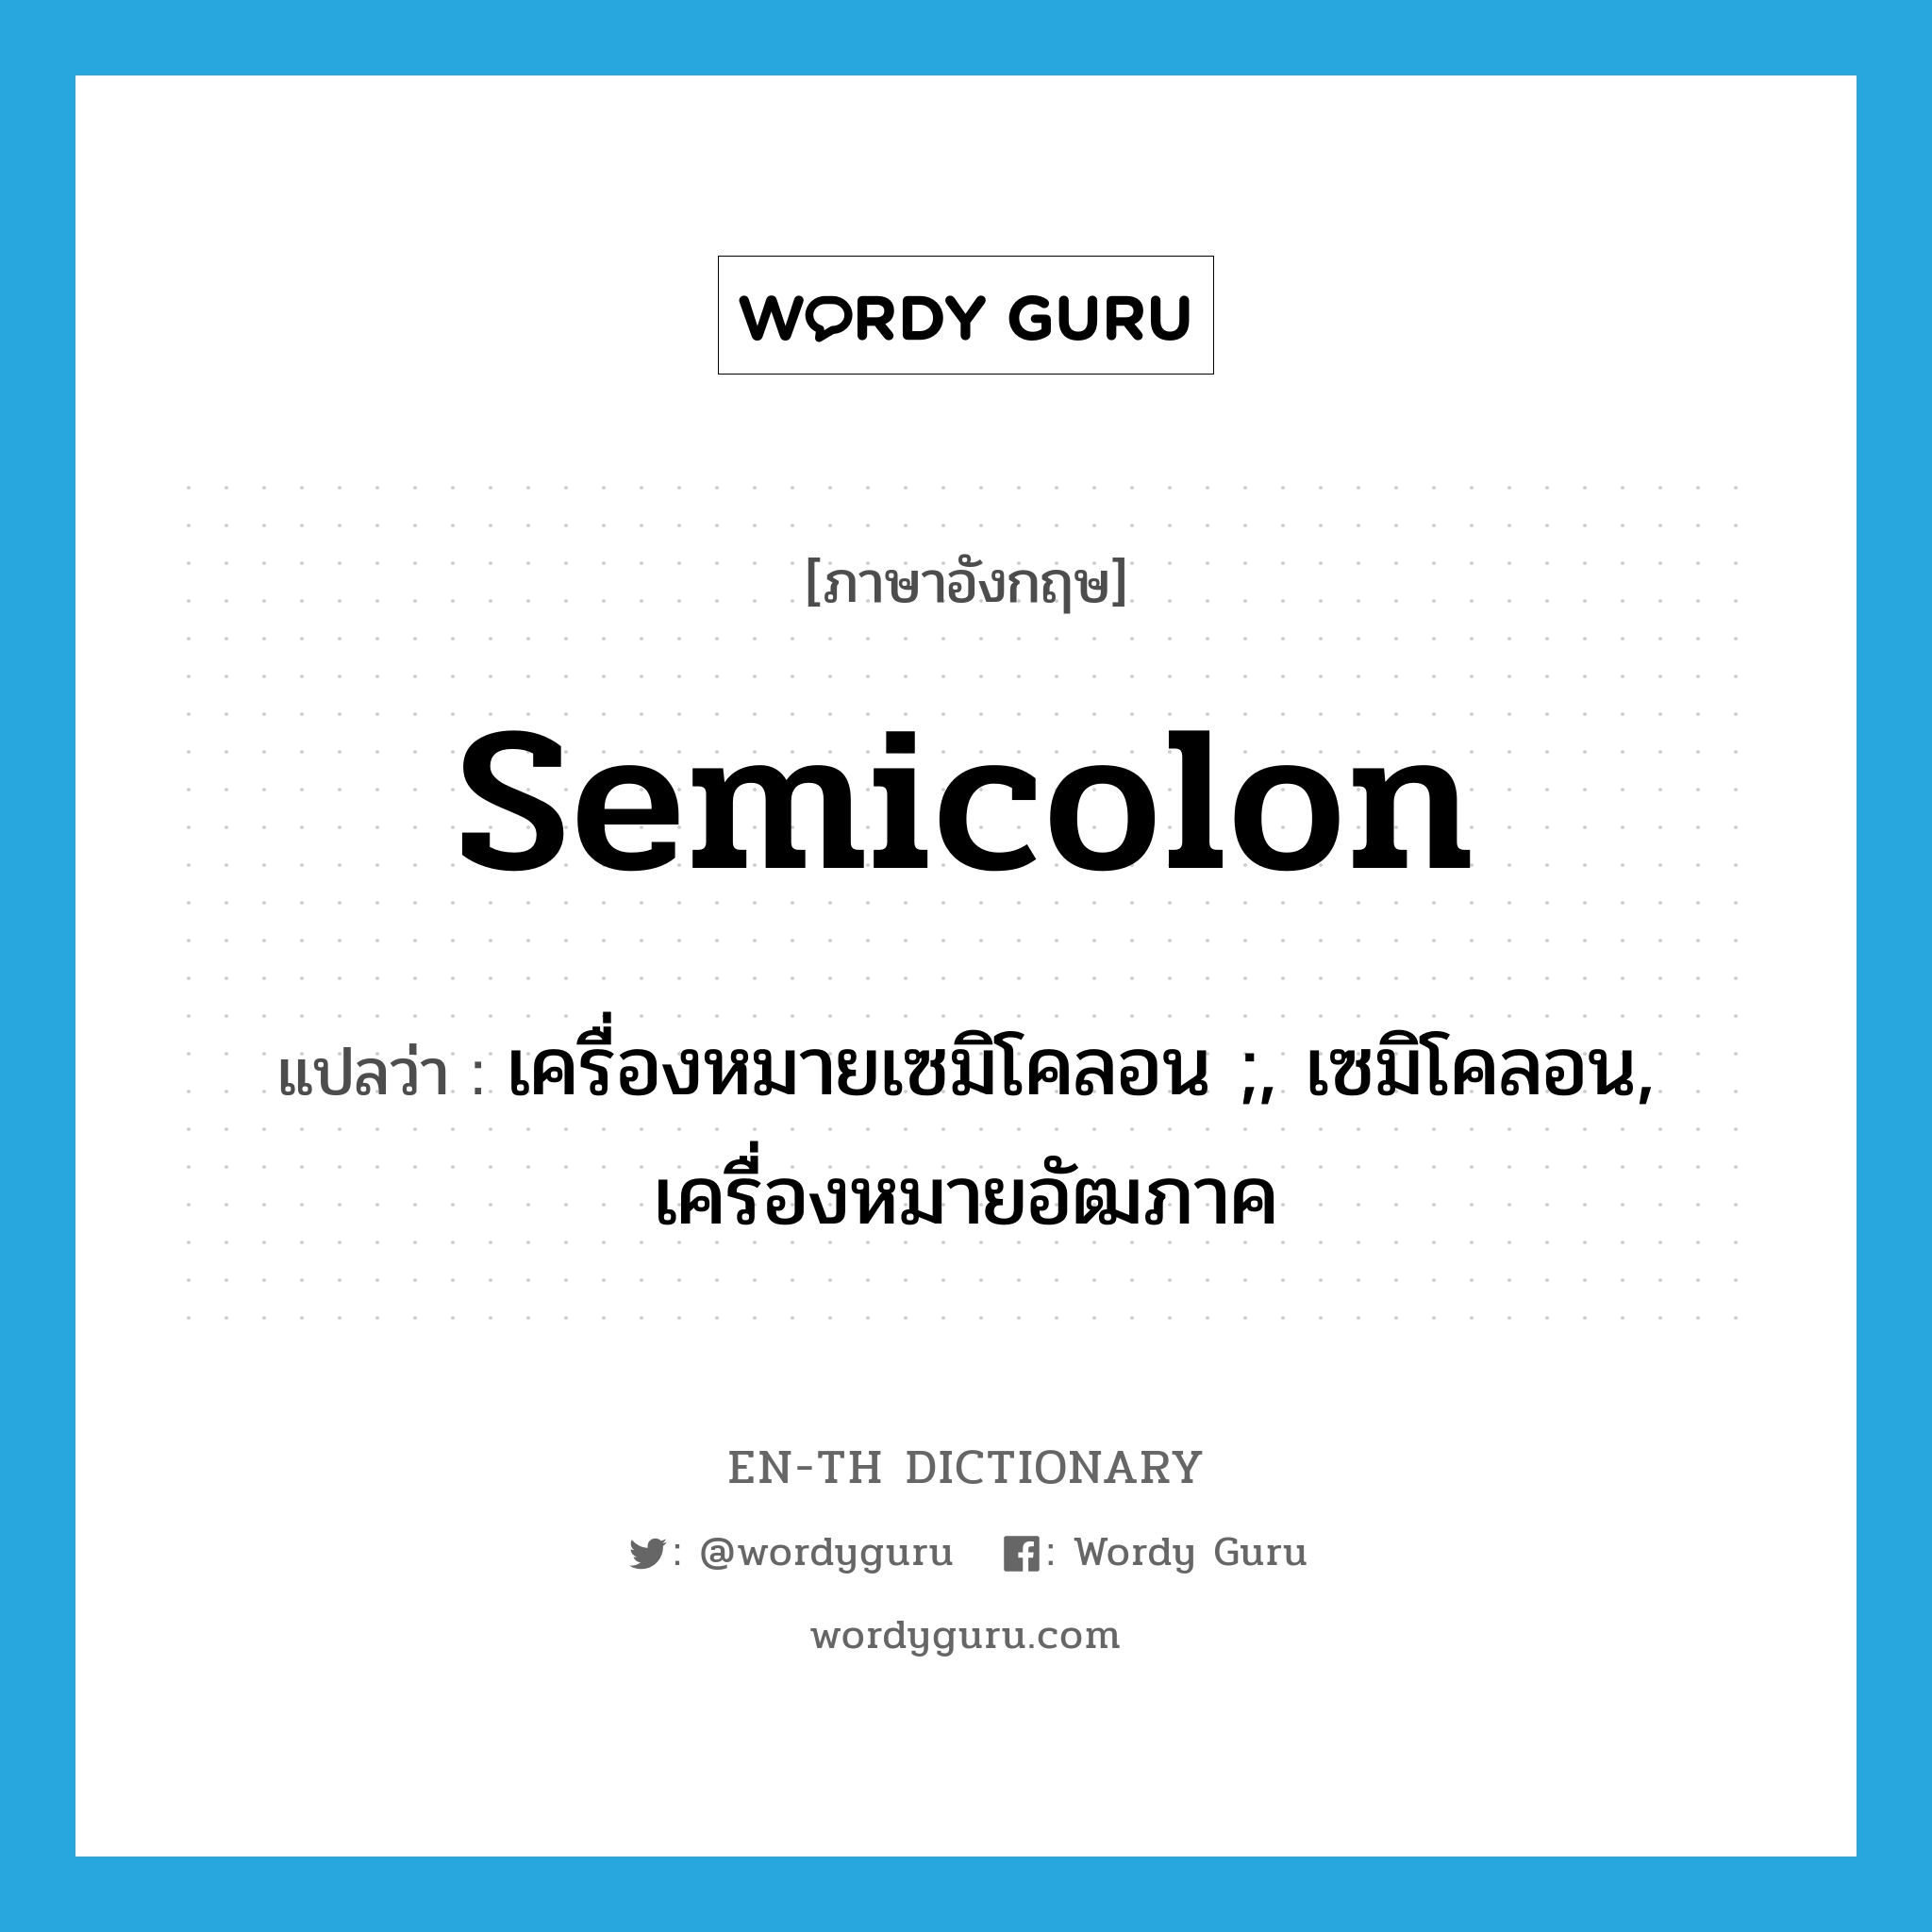 เครื่องหมายเซมิโคลอน ;, เซมิโคลอน, เครื่องหมายอัฒภาค ภาษาอังกฤษ?, คำศัพท์ภาษาอังกฤษ เครื่องหมายเซมิโคลอน ;, เซมิโคลอน, เครื่องหมายอัฒภาค แปลว่า semicolon ประเภท N หมวด N